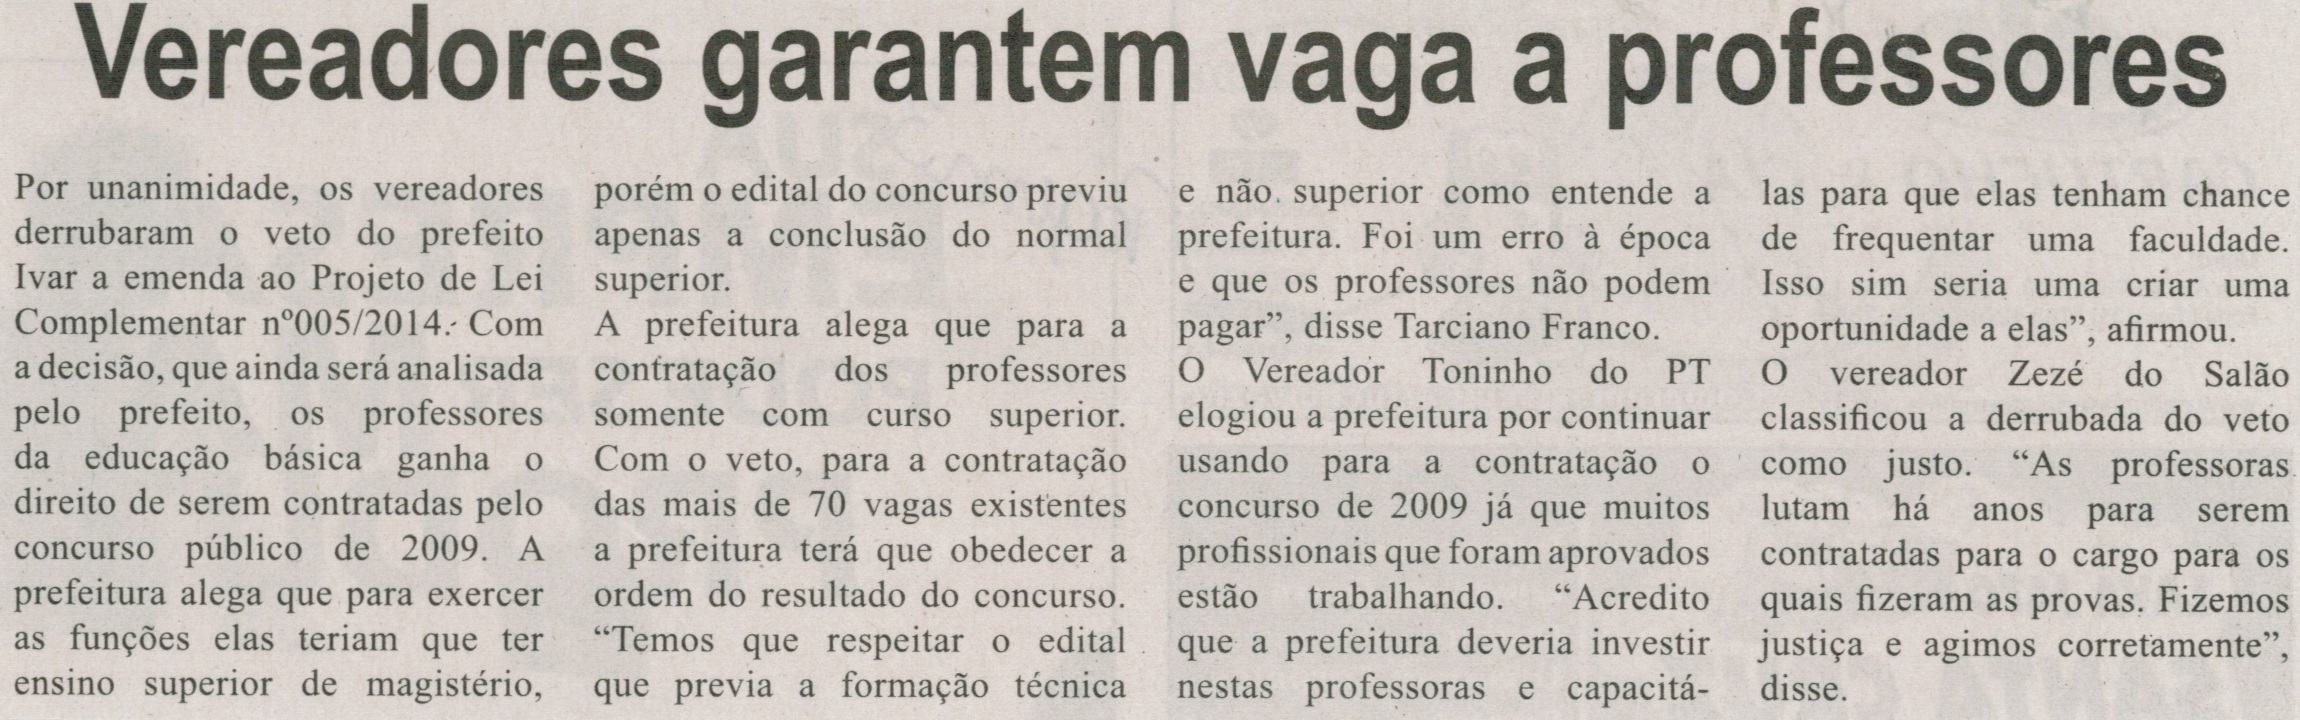 Vereadores garantem vaga a professores. Correio de Minas, Conselheiro Lafaiete, 31 mai. 2014, p. 3.